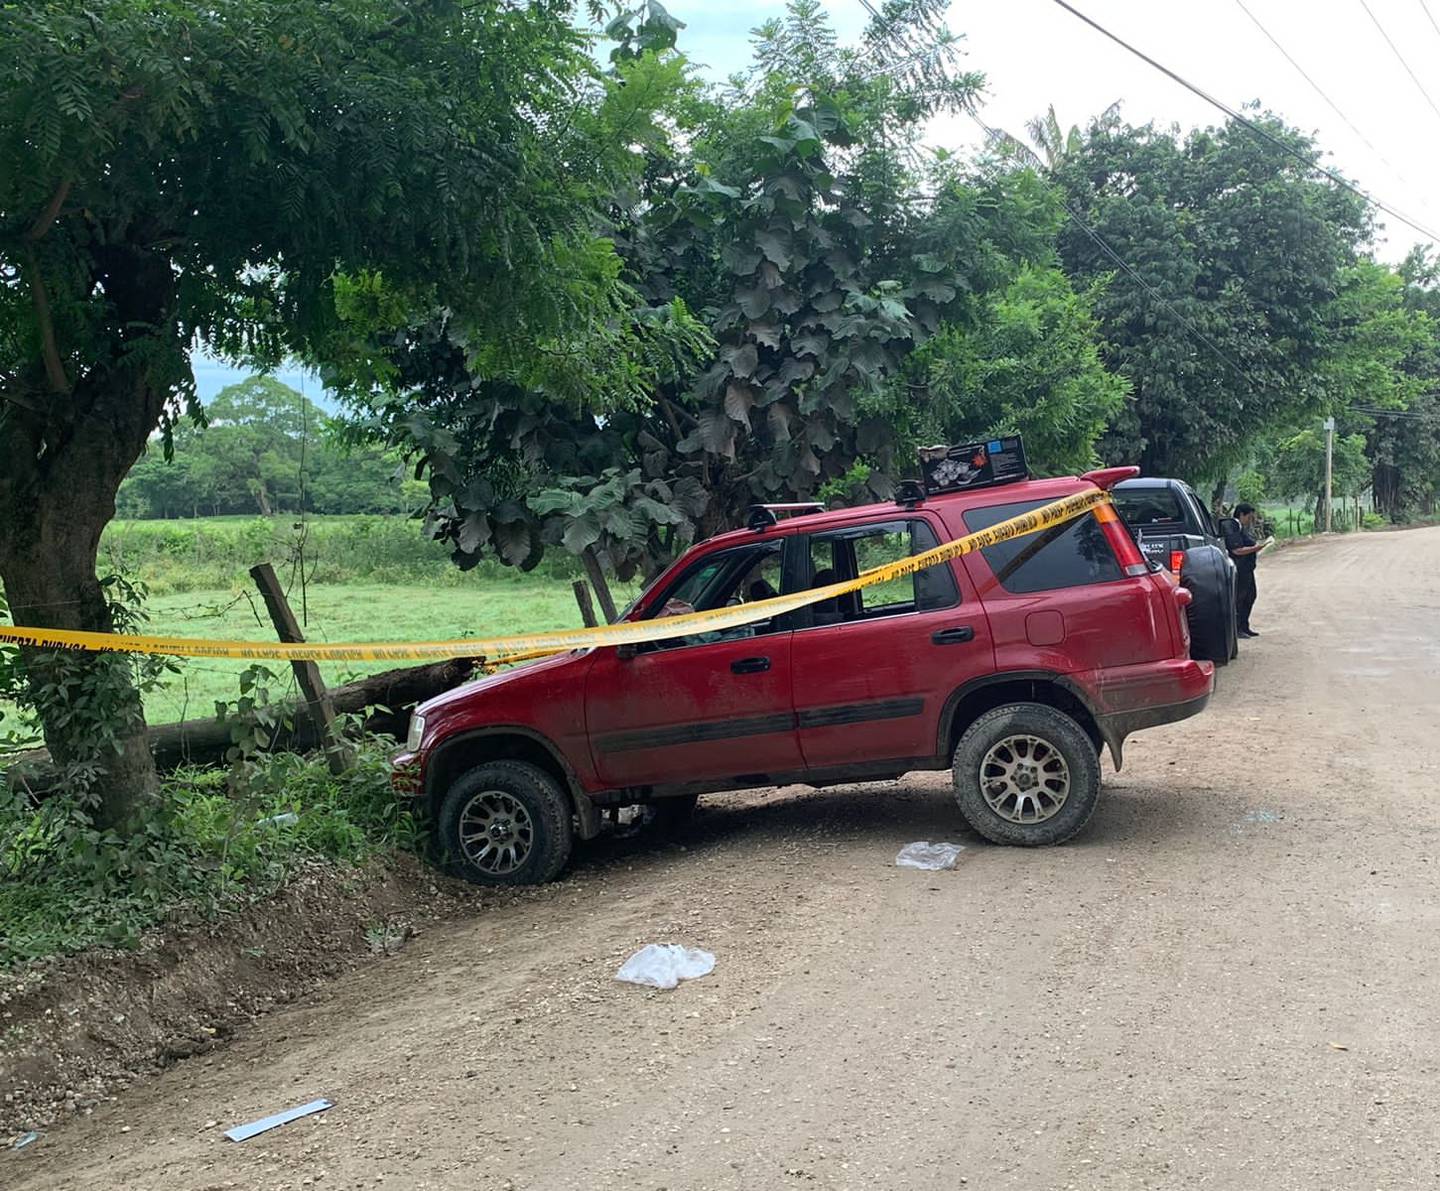 El Honda rojo en que viajaban los hombres asesinados está a nombre de una joven de 20 años, vecina de Heredia,, hija de uno de los fallecidos. Foto: suministrada por Keyna Calderón.